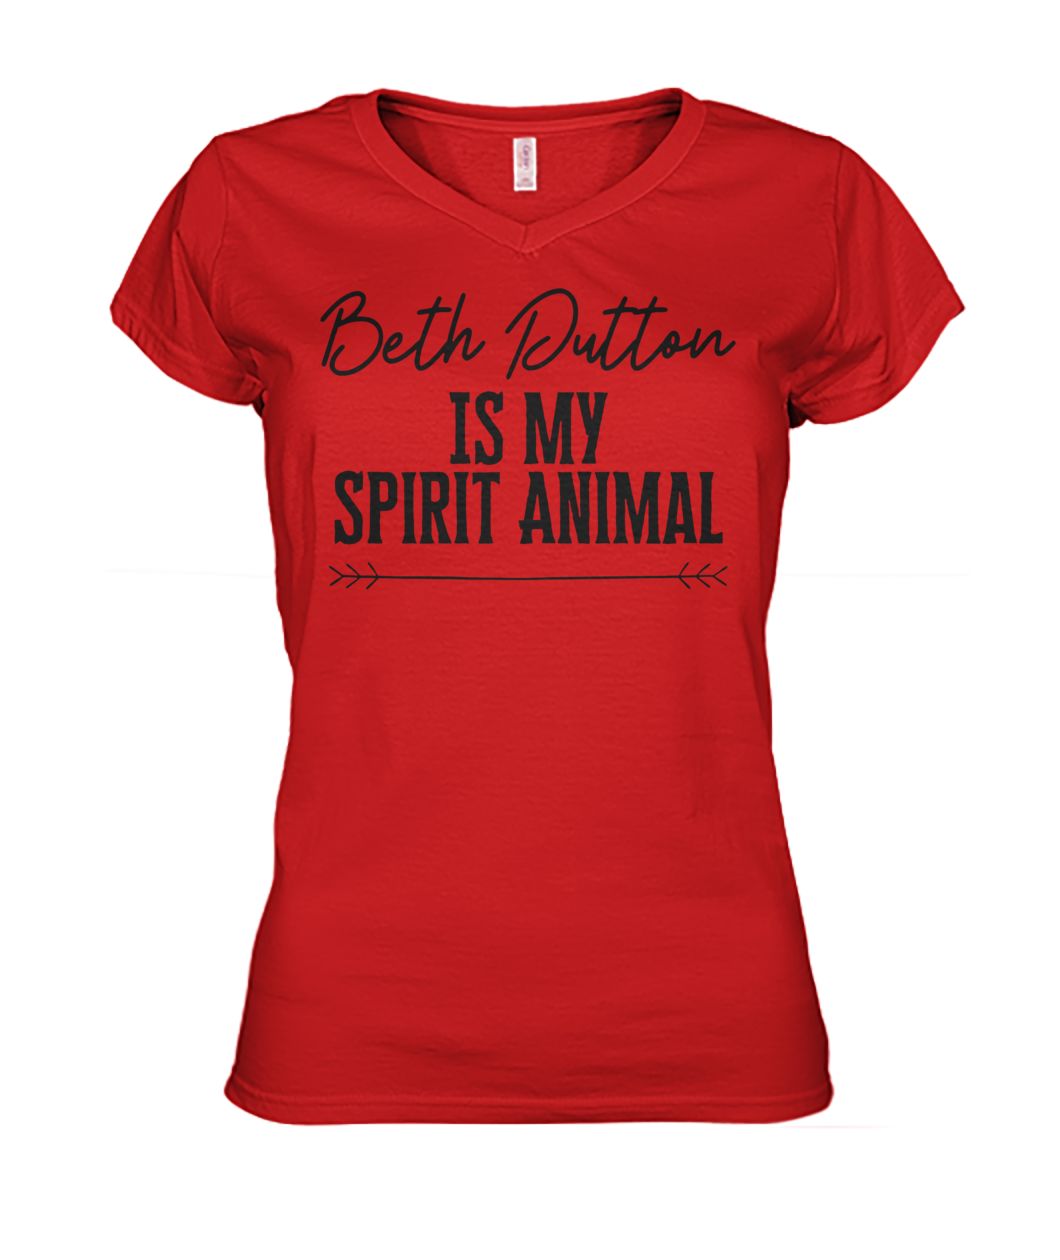 Beth dutton is my spirit animal women's v-neck